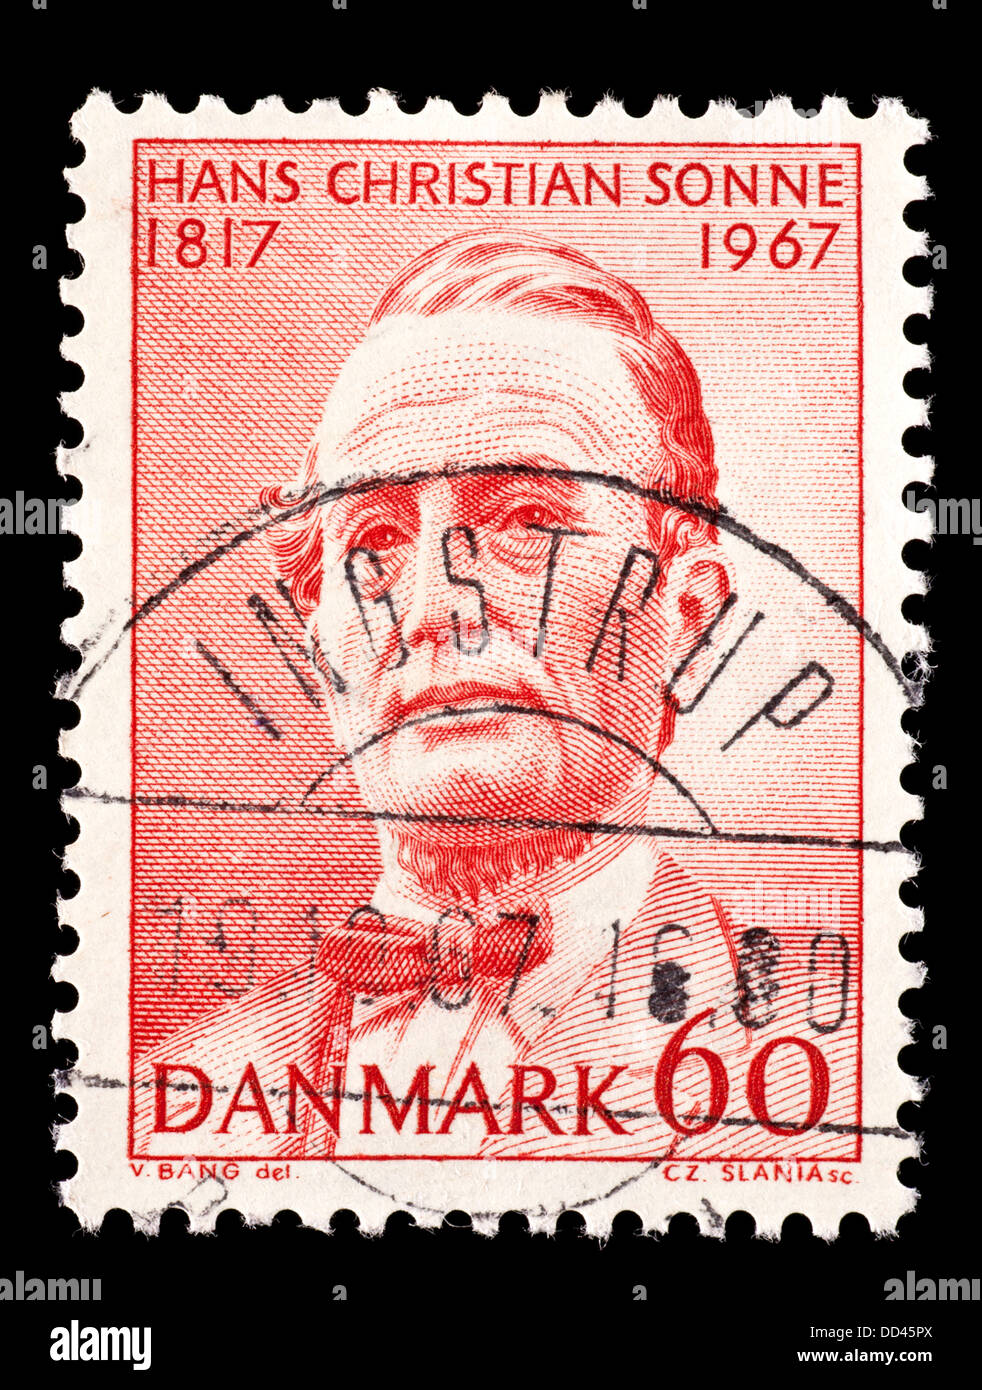 Francobollo dalla Danimarca raffiguranti Hans Christian Sonne, pioniere nel movimento cooperativo in Danimarca. Foto Stock